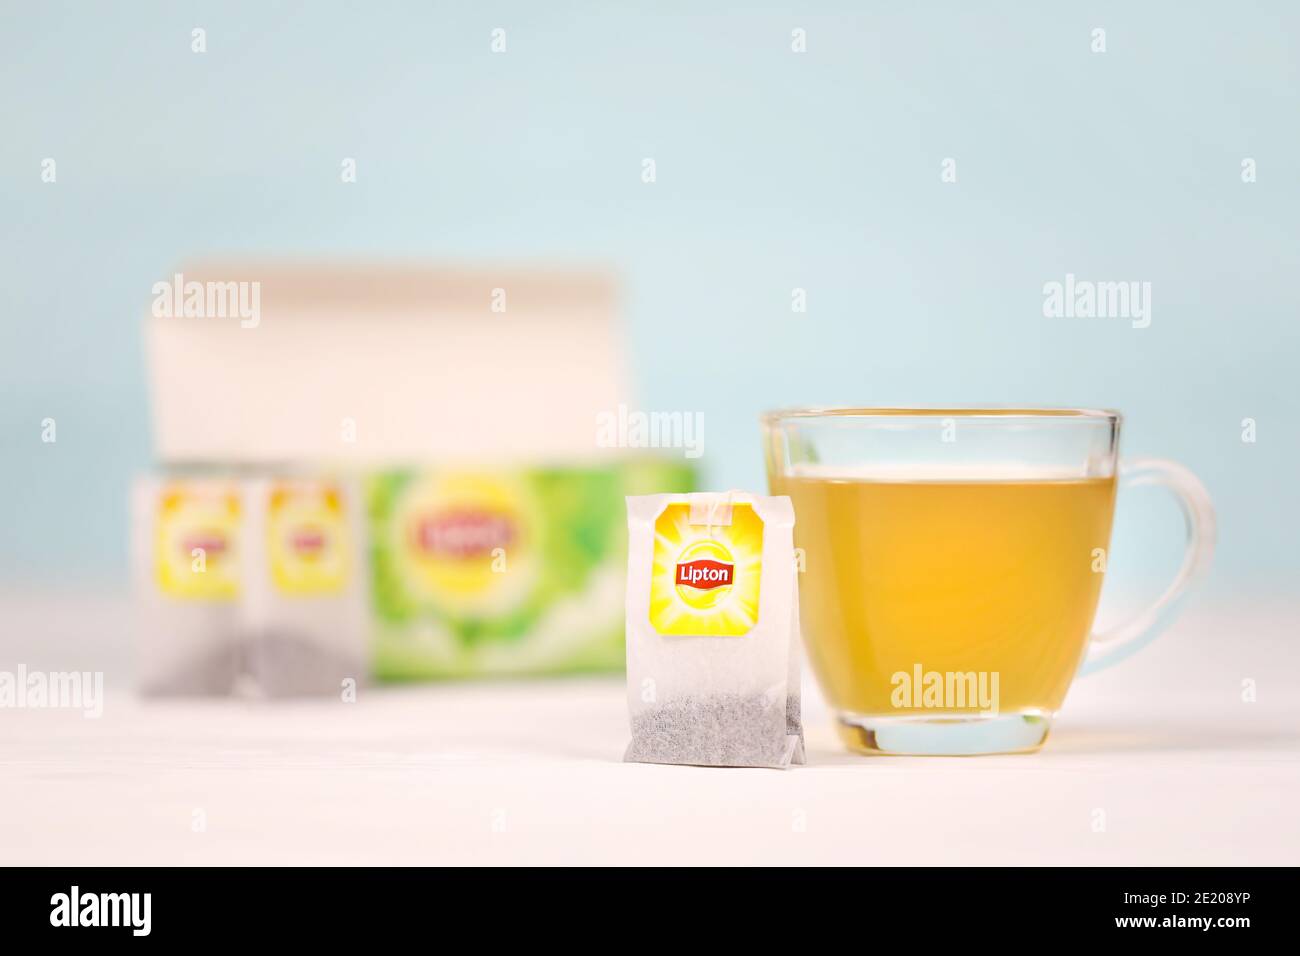 KHARKOV, UKRAINE - 8 DÉCEMBRE 2020 : sachets de thé vert classiques Lipton. Lipton est une marque britannique de thé appartenant à Unilever et à PepsiCo Banque D'Images